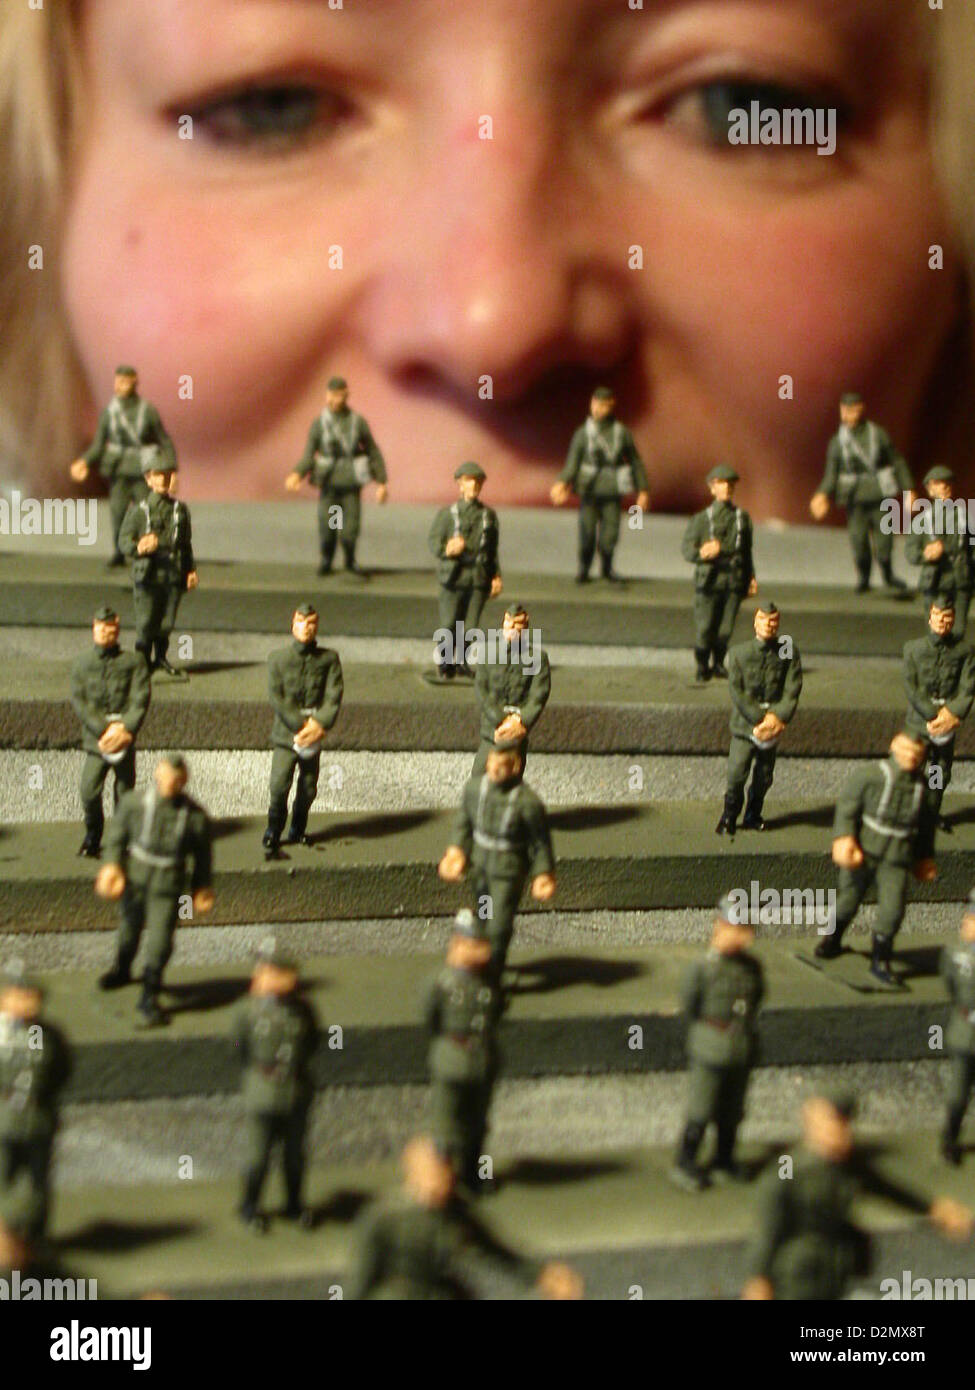 Zinn Figur Malerin Angelika Hauser befasst sich mit Miniatur-NVA-Soldaten  (Nationale Volksarmee der DDR) der Maßstab 1: 87 bei der Skala Modellfirma  Ritter c.b. von Krauthauser in Waltersdorf, Deutschland, 17. Januar 2005.  Die